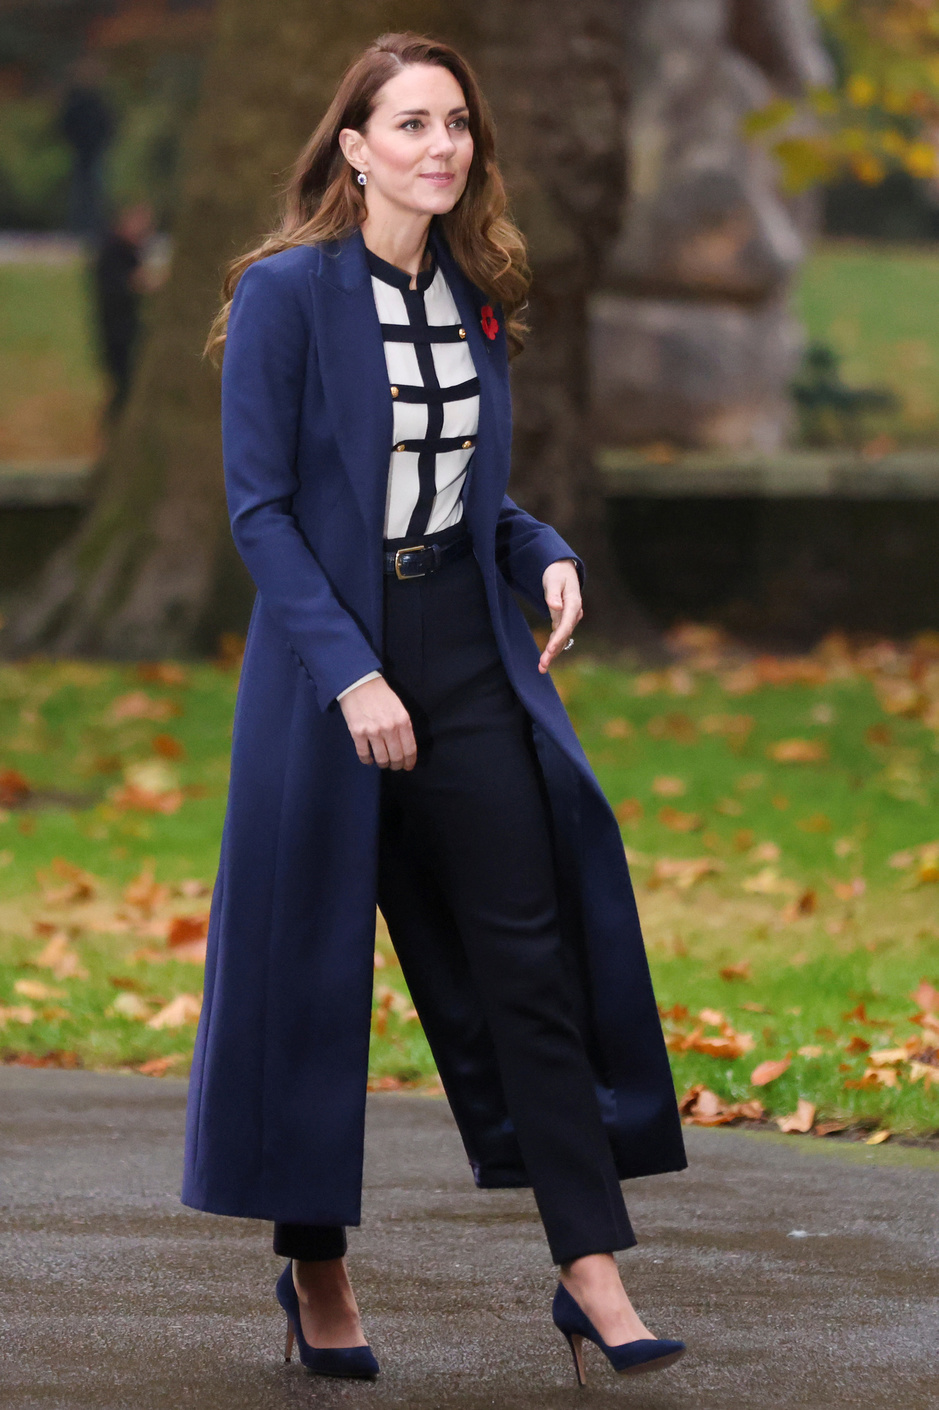 Kate Middleton fête ses 40 ans: retour sur son style impeccable (en images)